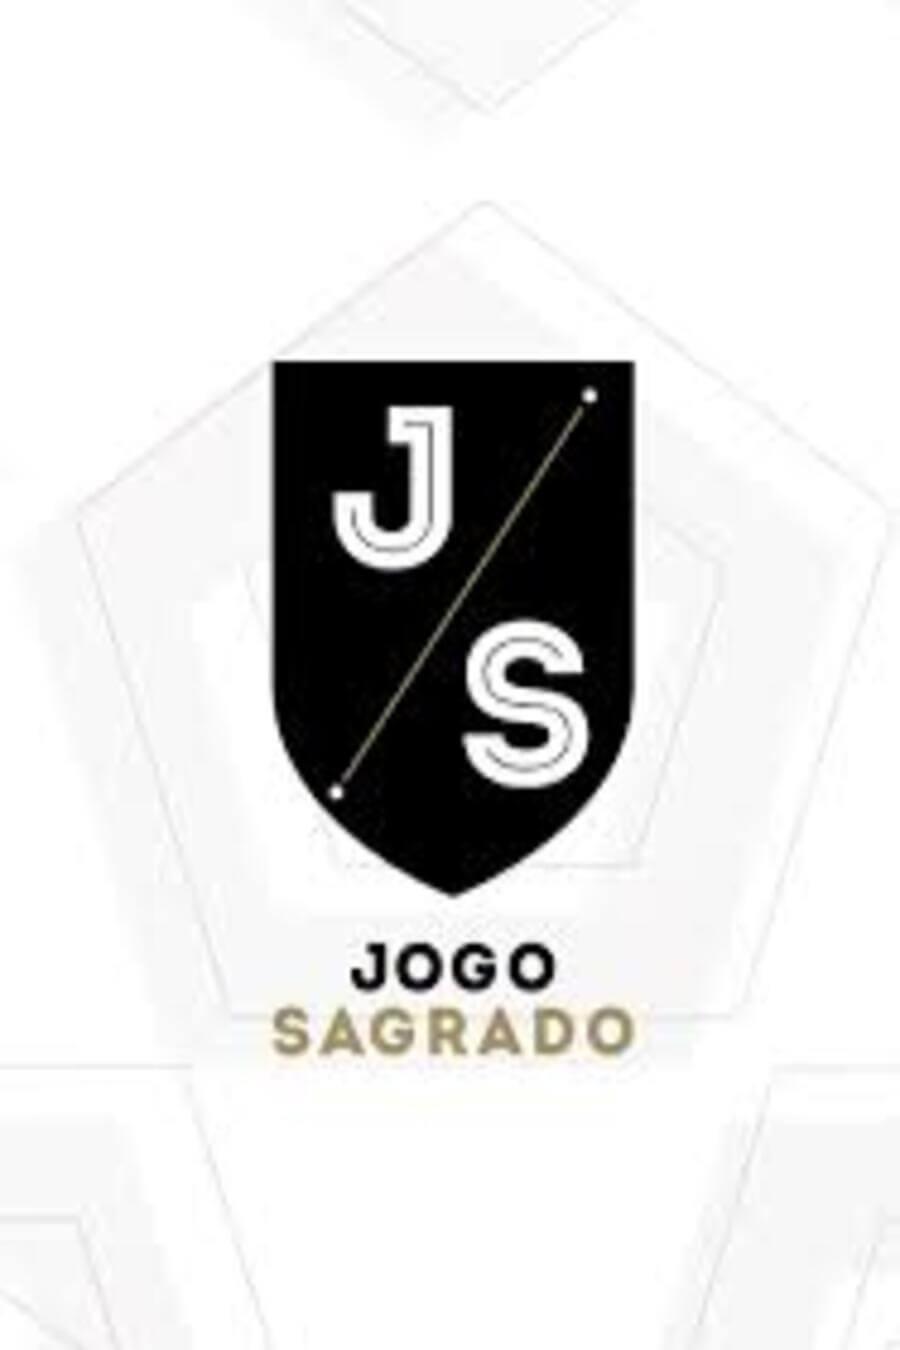 TV ratings for Jogo Sagrado in Poland. Fox Sports Brasil TV series